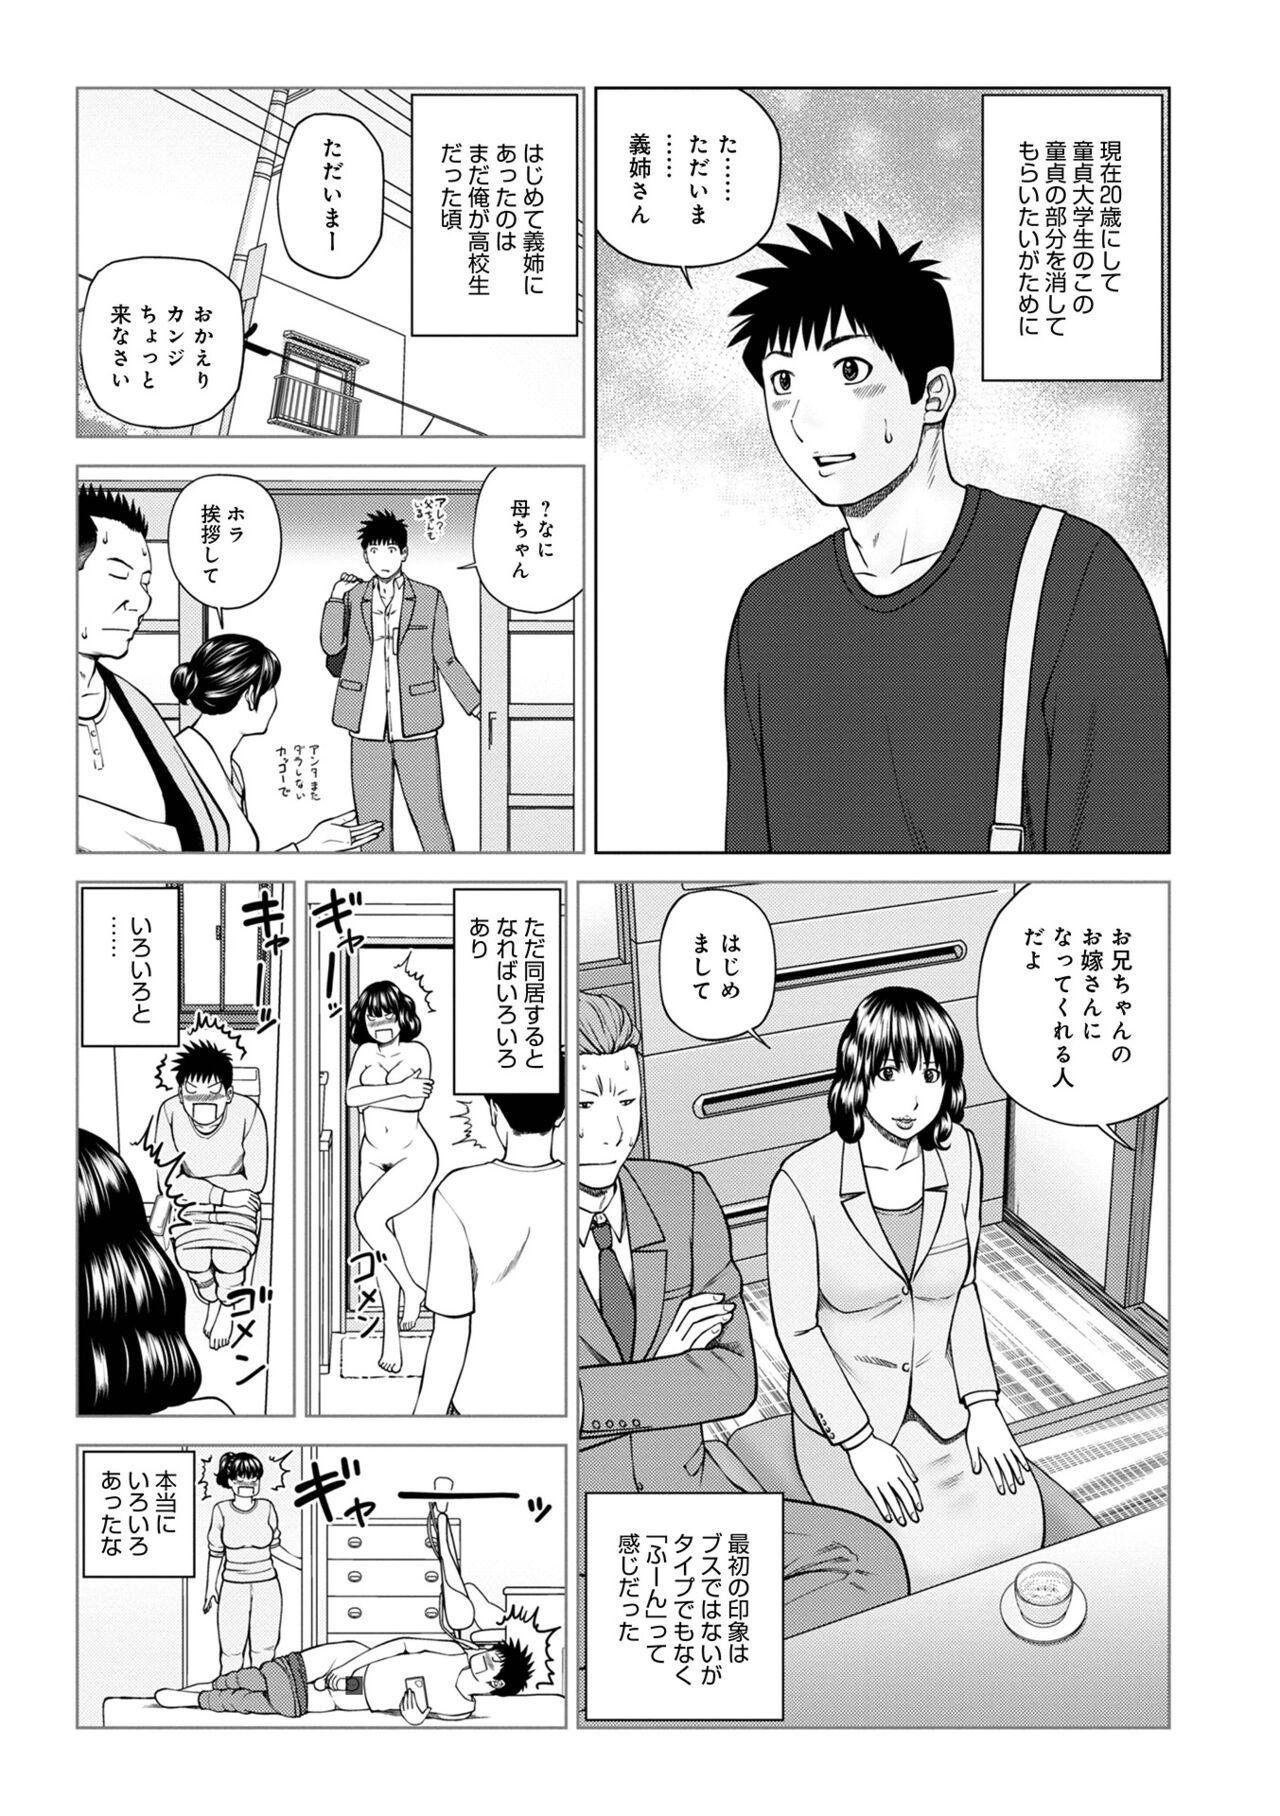 Double Penetration WEB Ban COMIC Gekiyaba! Vol. 153 Double - Page 5